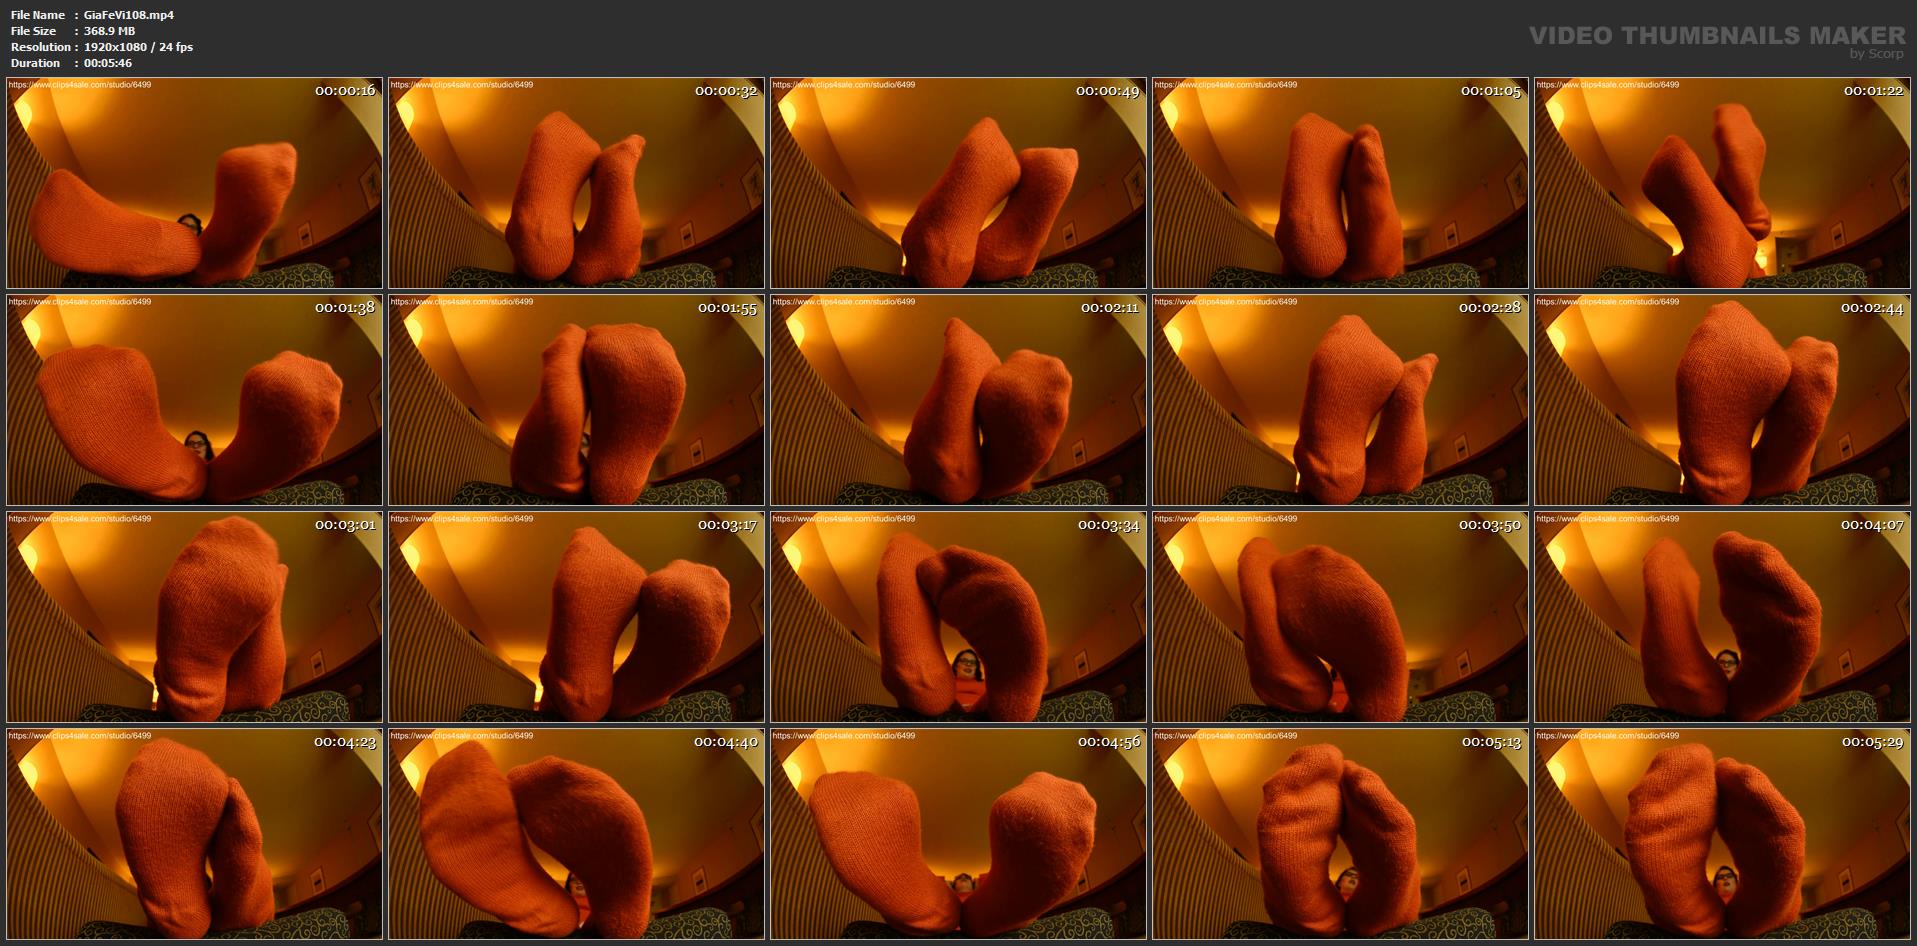 Velma's Giant Socked Soles - GIANTESS FETISH VIDS - FULL HD/1080p/MP4